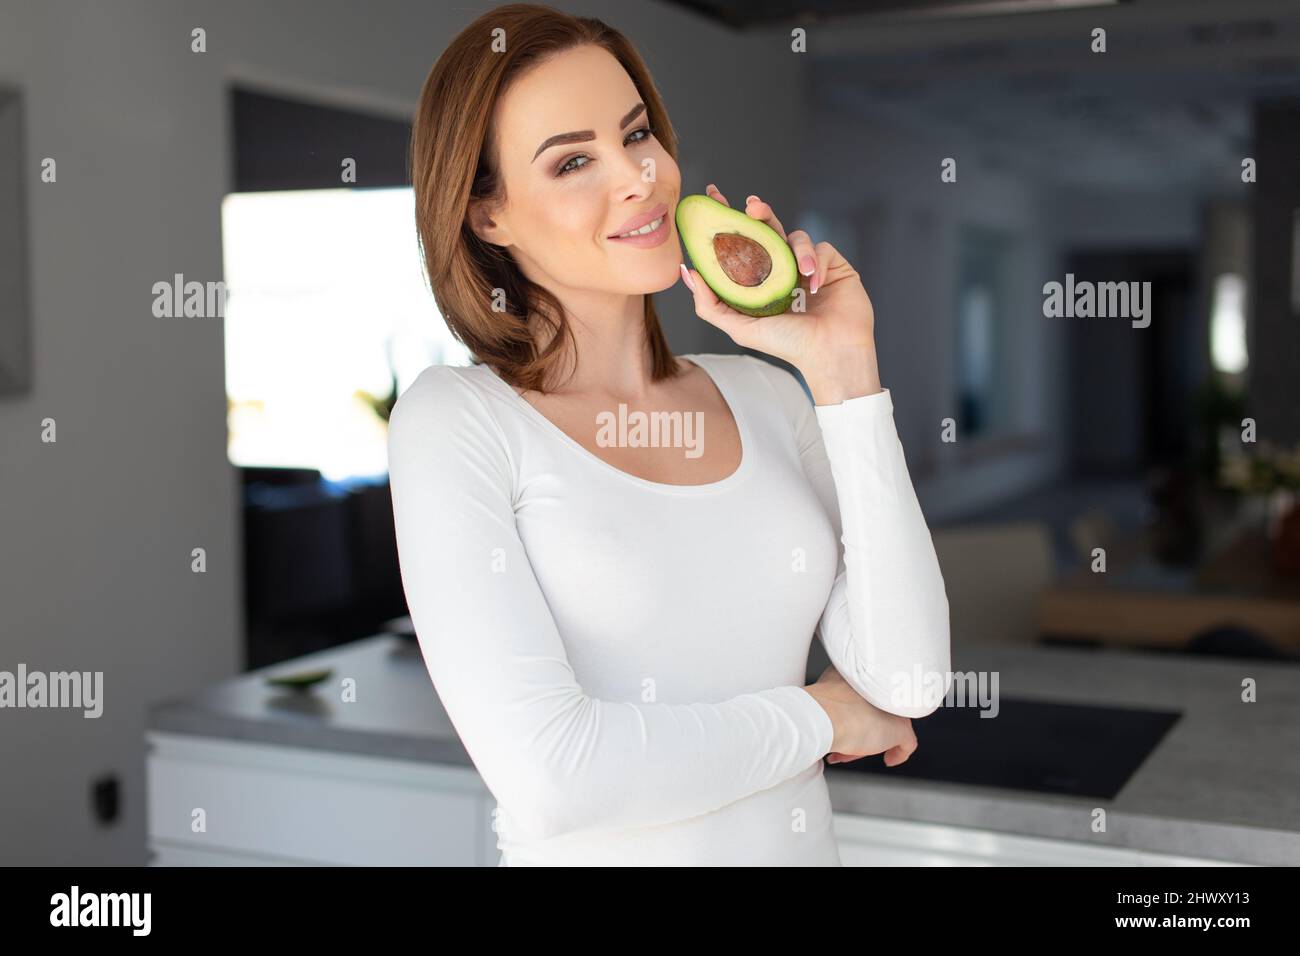 Junge fröhliche 30s kaukasische Frau, die halbierte Avocado im Gesicht in der Küche hält Stockfoto